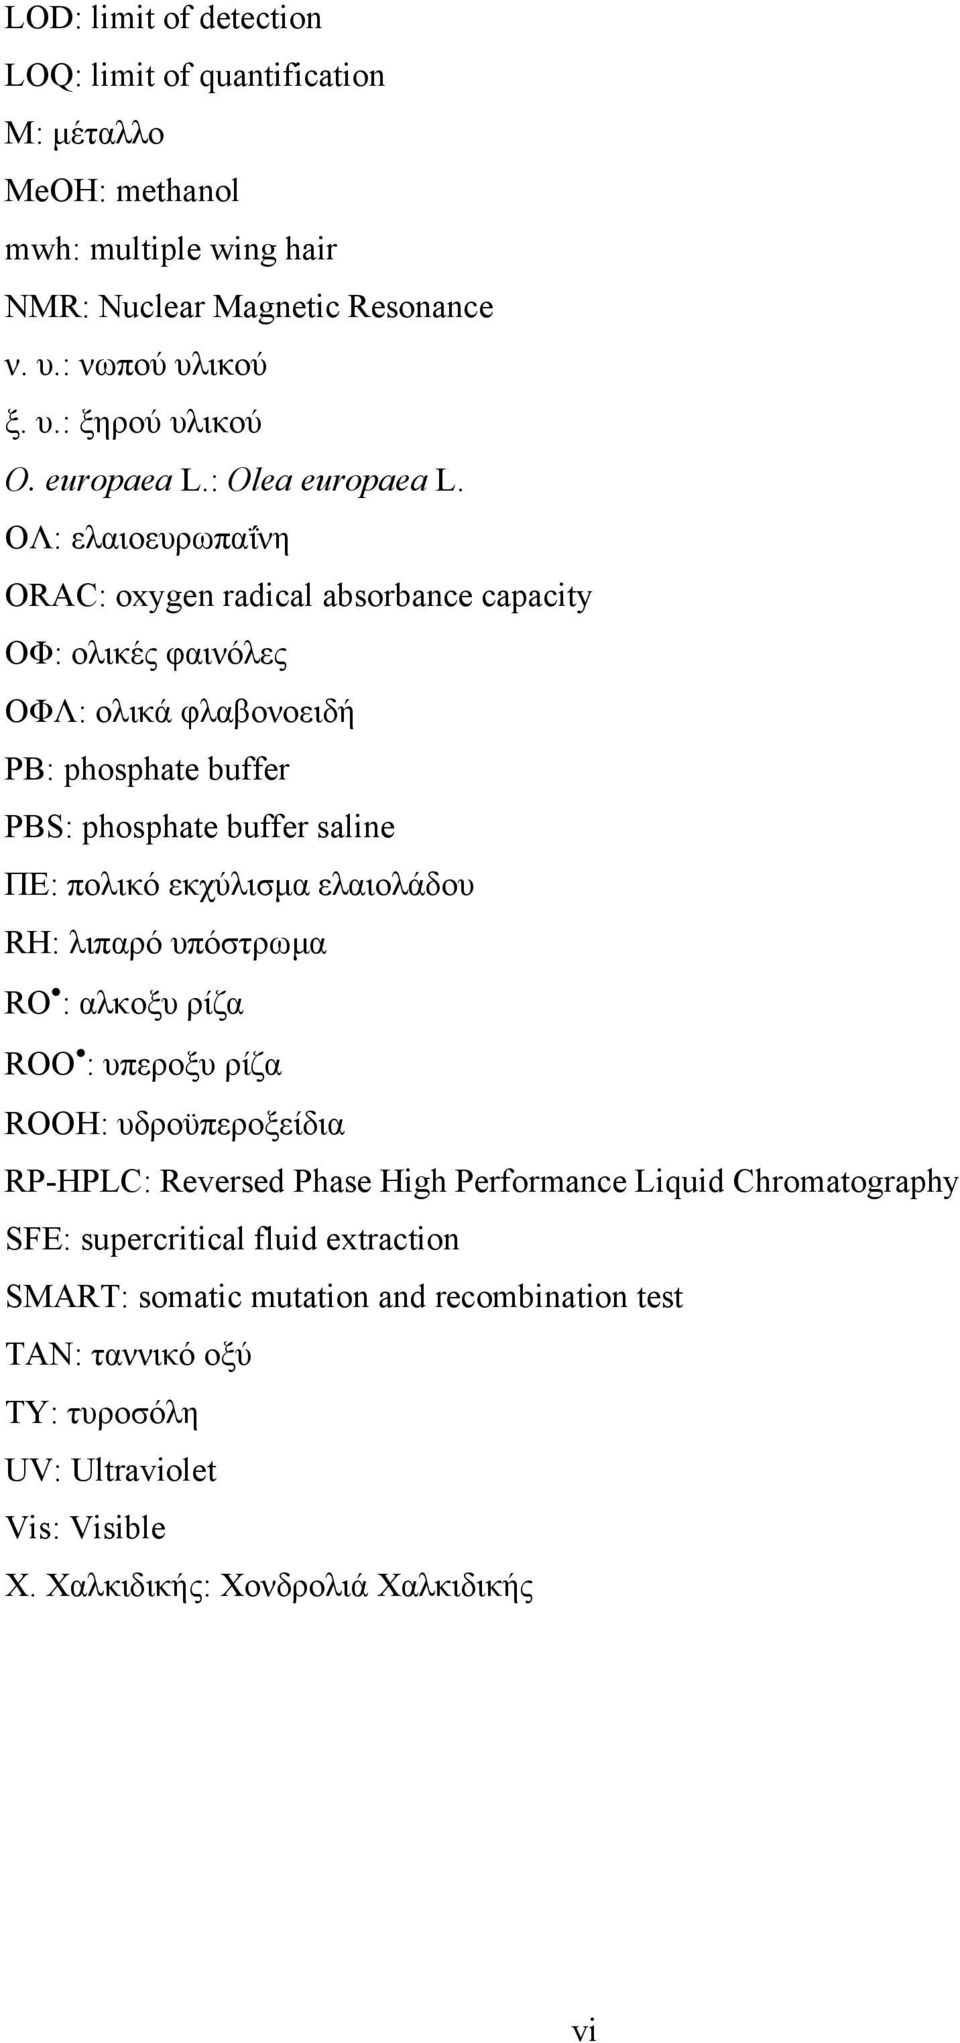 ΟΛ: ελαιοευρωπαΐνη ORAC: oxygen radical absorbance capacity ΟΦ: ολικές φαινόλες ΟΦΛ: ολικά φλαβονοειδή PB: phosphate buffer PBS: phosphate buffer saline ΠΕ: πολικό εκχύλισµα